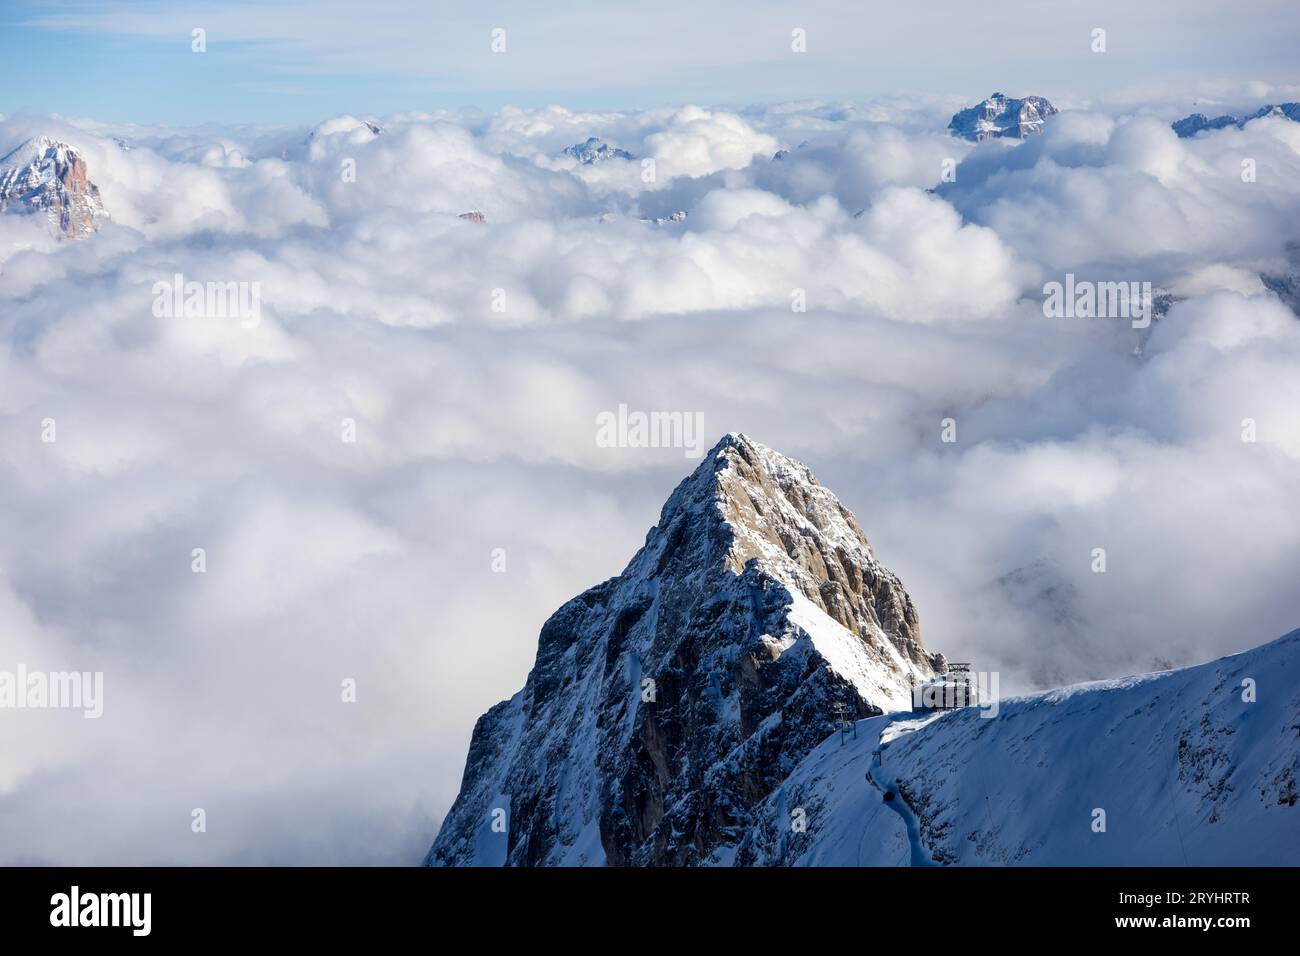 Winter Italien Dolomiten mit Schnee bedeckt. Hochwertige Fotos Stockfoto